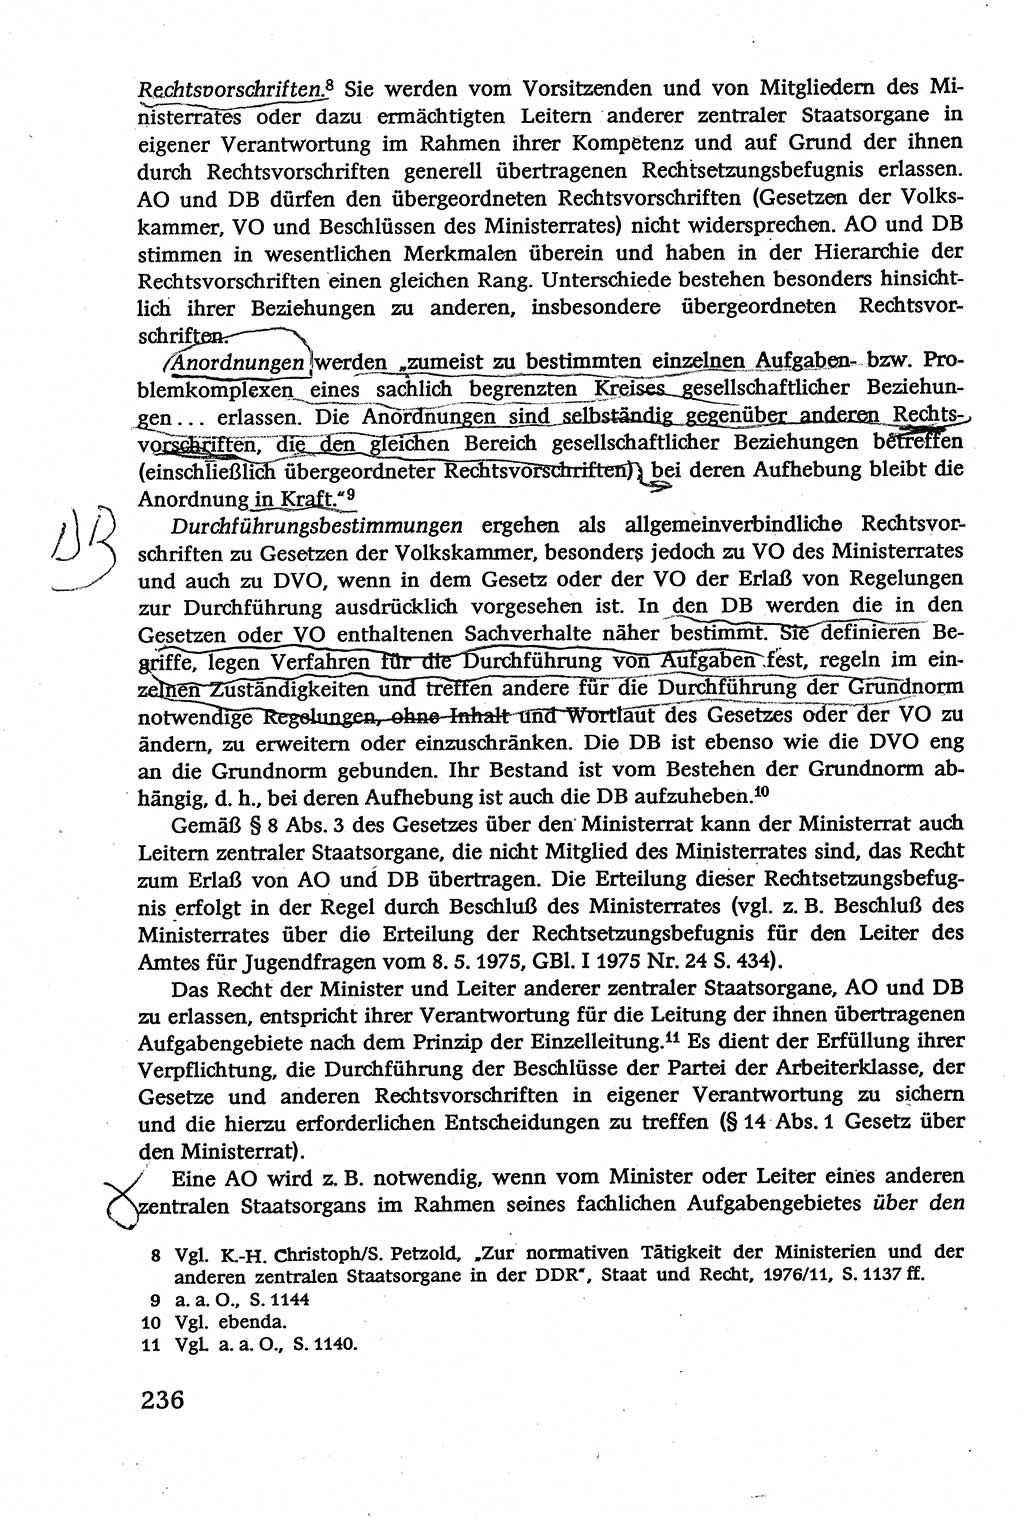 Verwaltungsrecht [Deutsche Demokratische Republik (DDR)], Lehrbuch 1979, Seite 236 (Verw.-R. DDR Lb. 1979, S. 236)